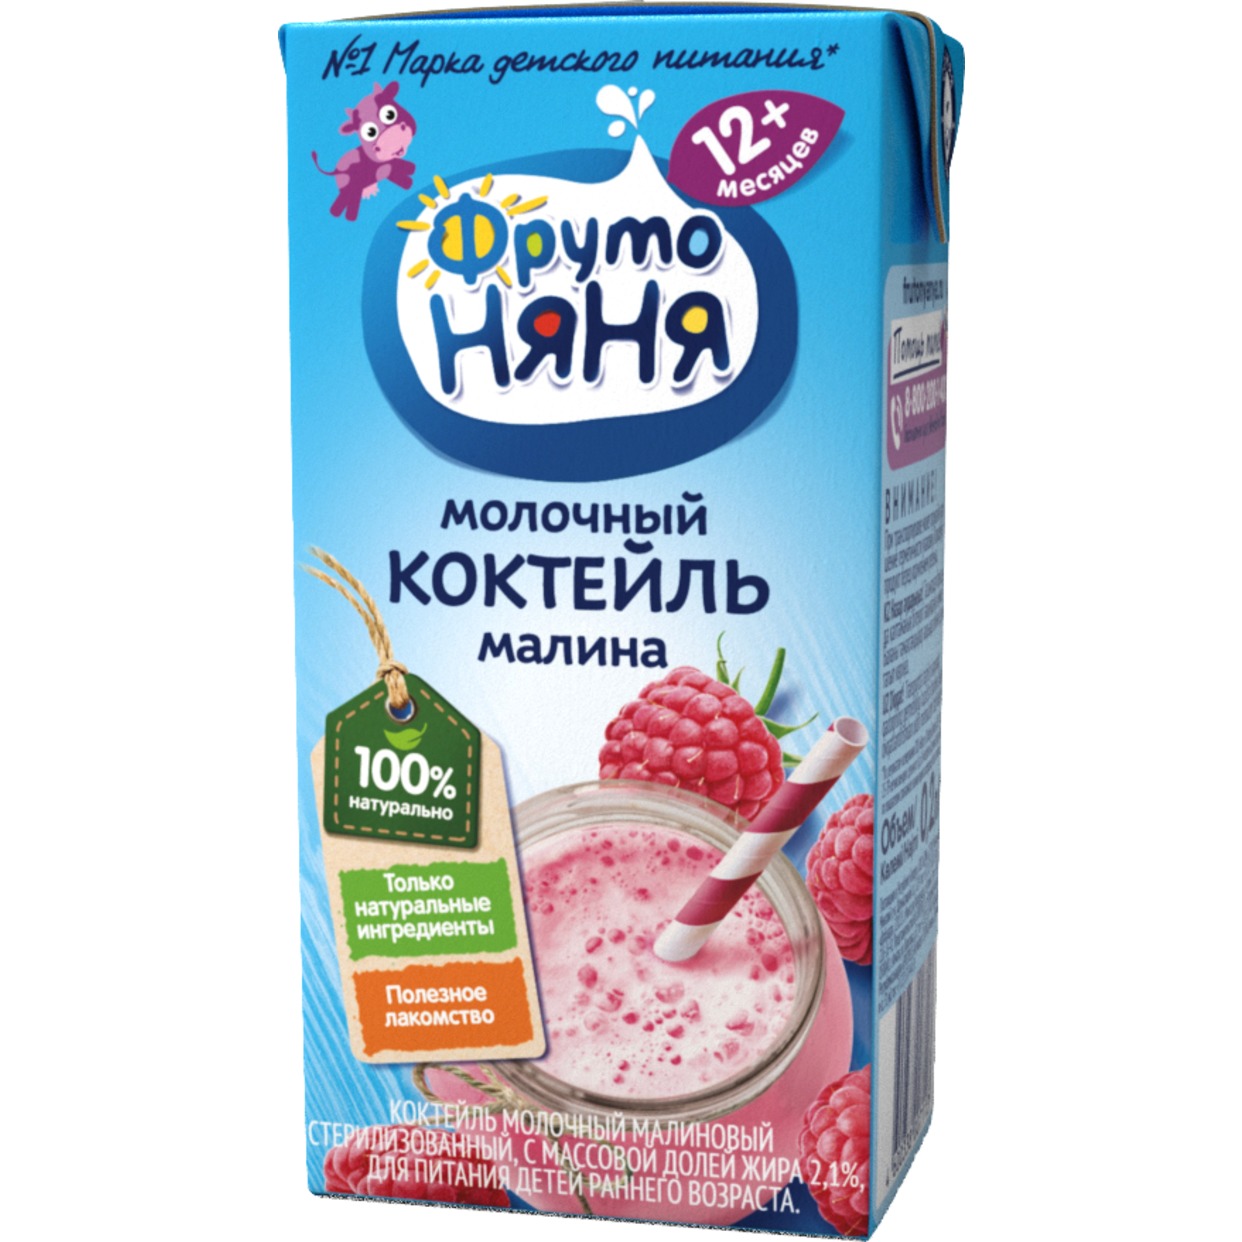 Коктейль молочный ФрутоНяня Малина 2.1% 200мл по акции в Пятерочке